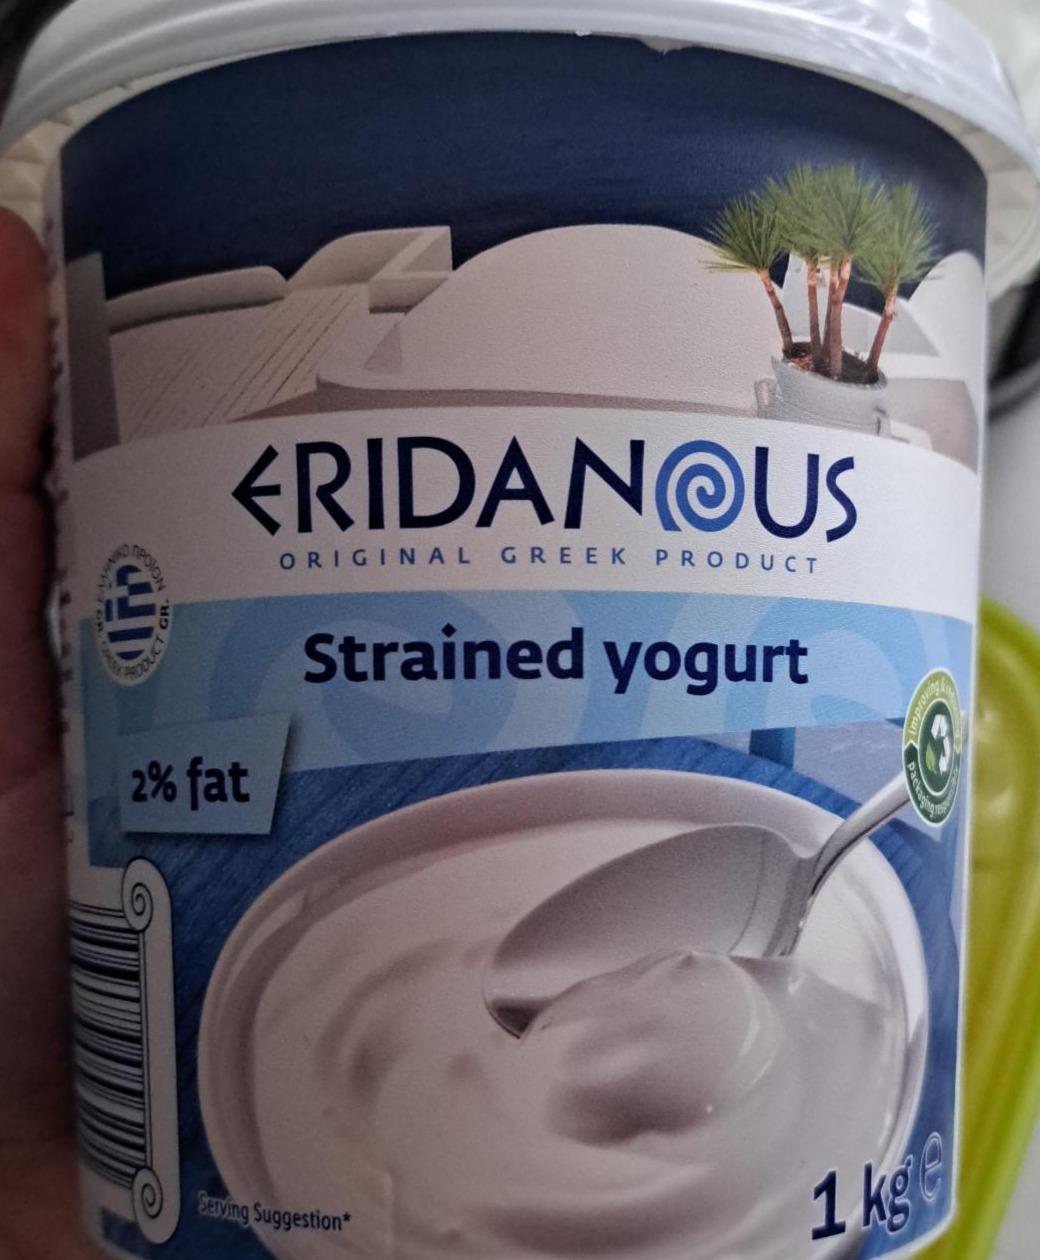 Фото - Греческий йогурт 2% Eridanous